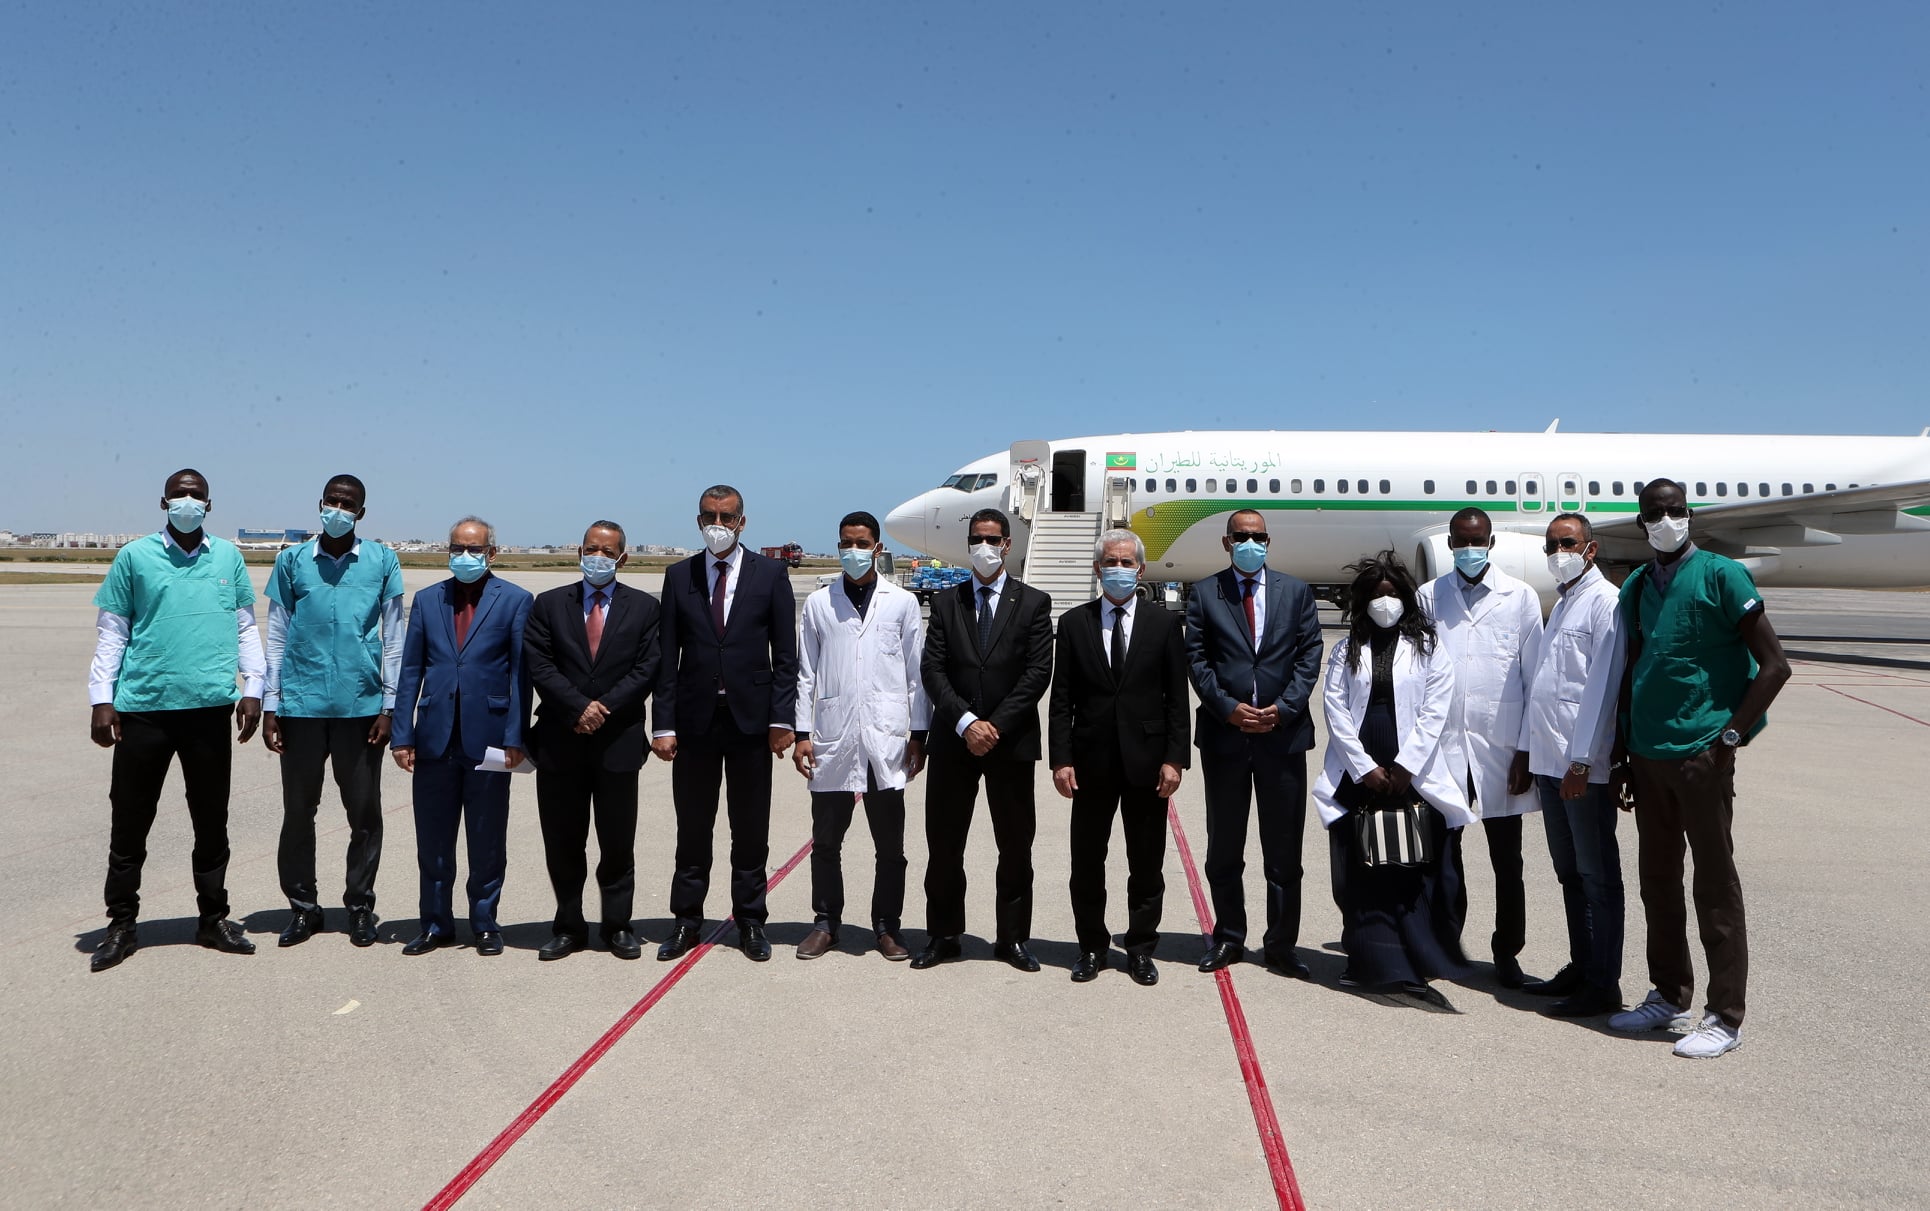 وصول طائرتين موريتانيتين محمّلتين بمعدّات صحية وفريق طبي وشبه طبي الى تونس